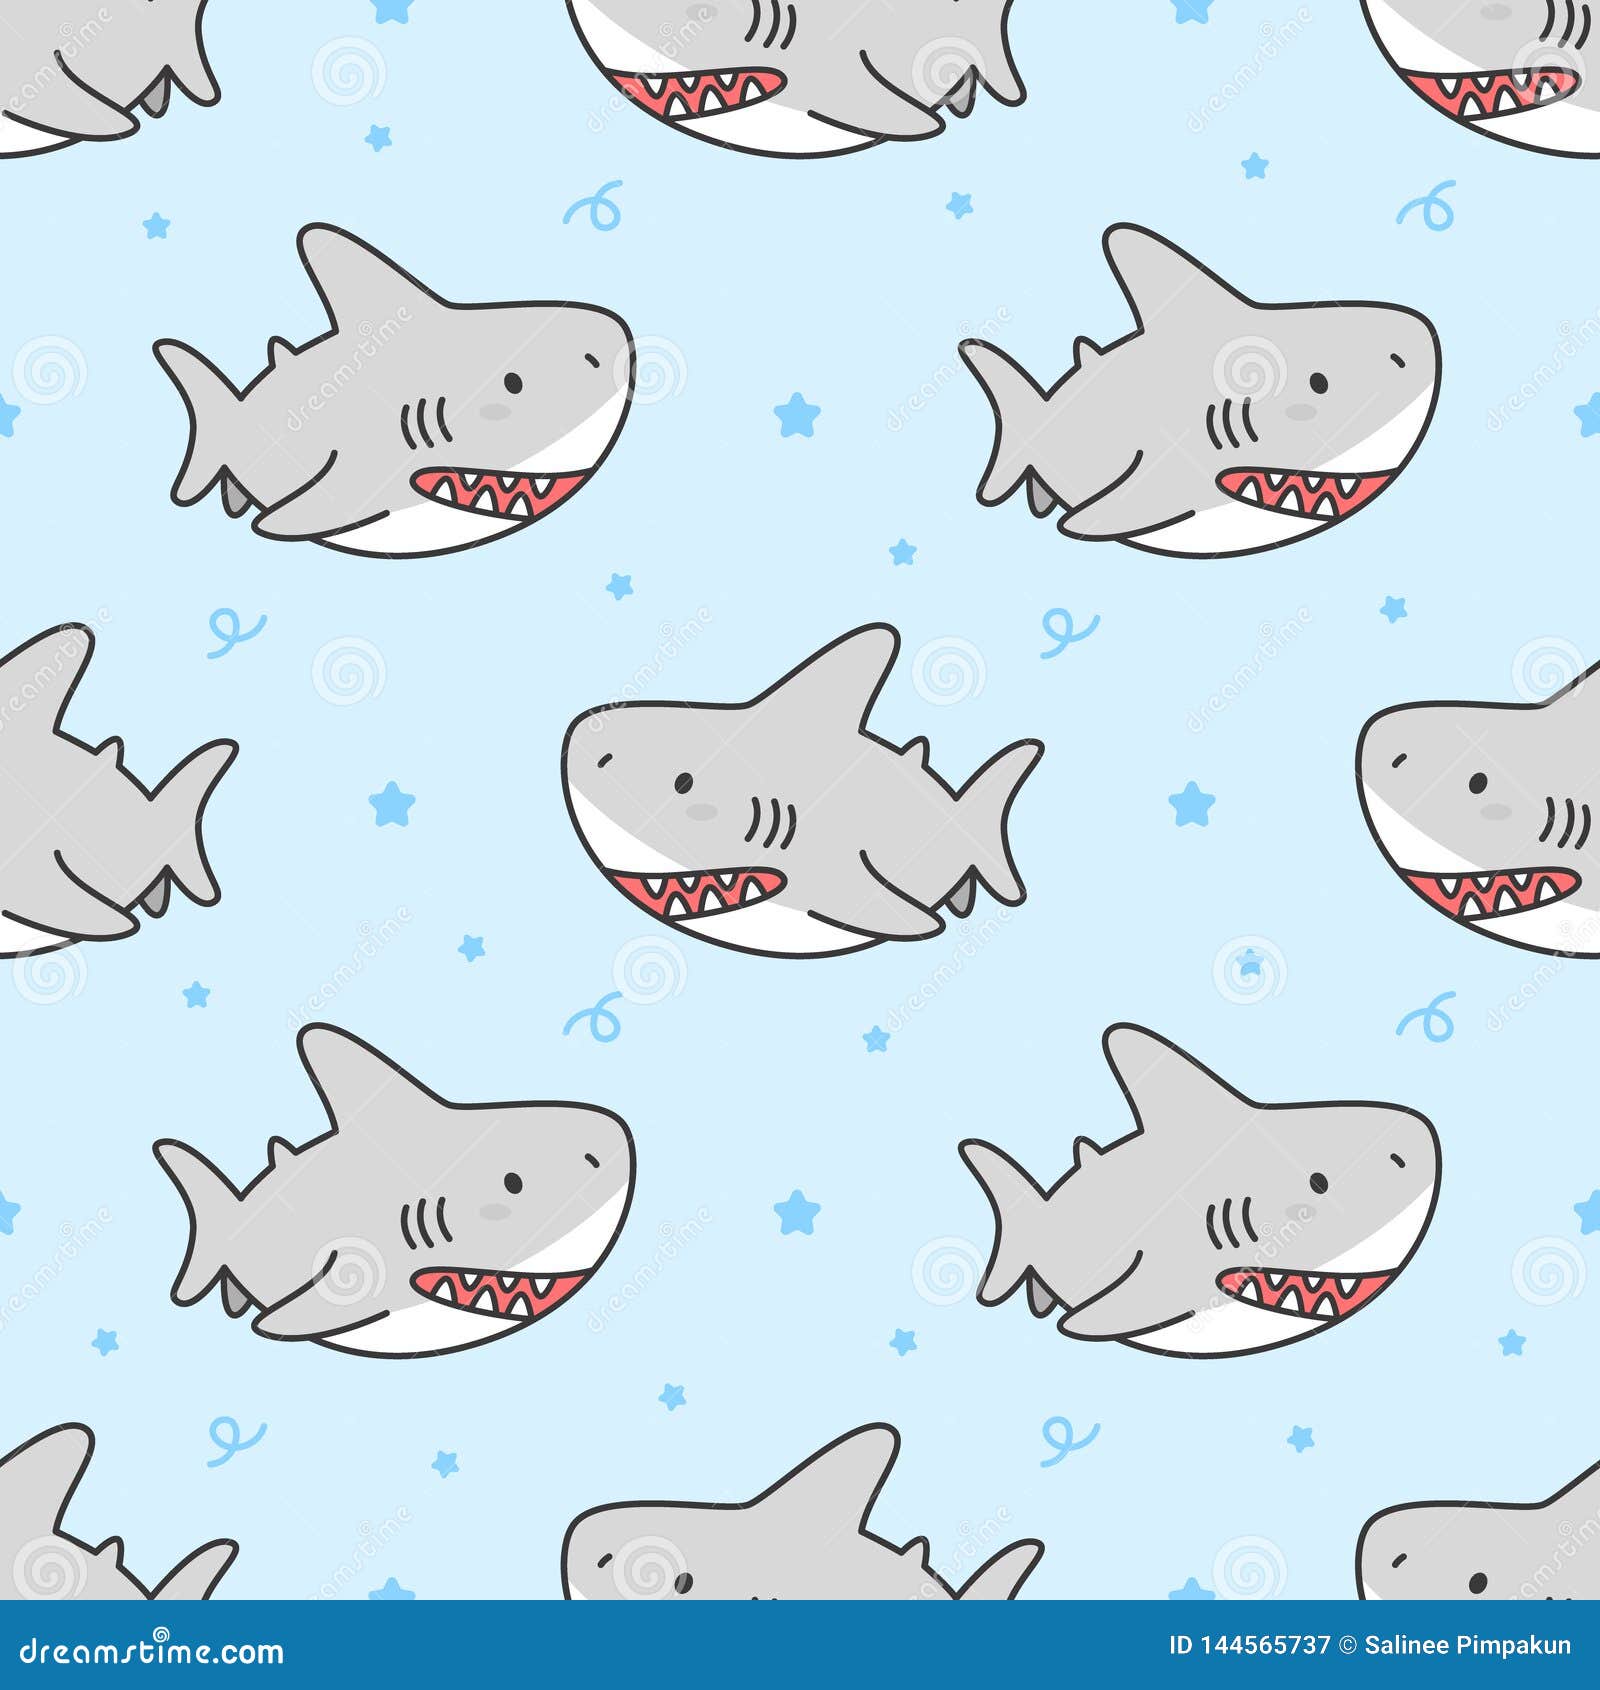 26 Shark Aesthetic Wallpapers  WallpaperSafari